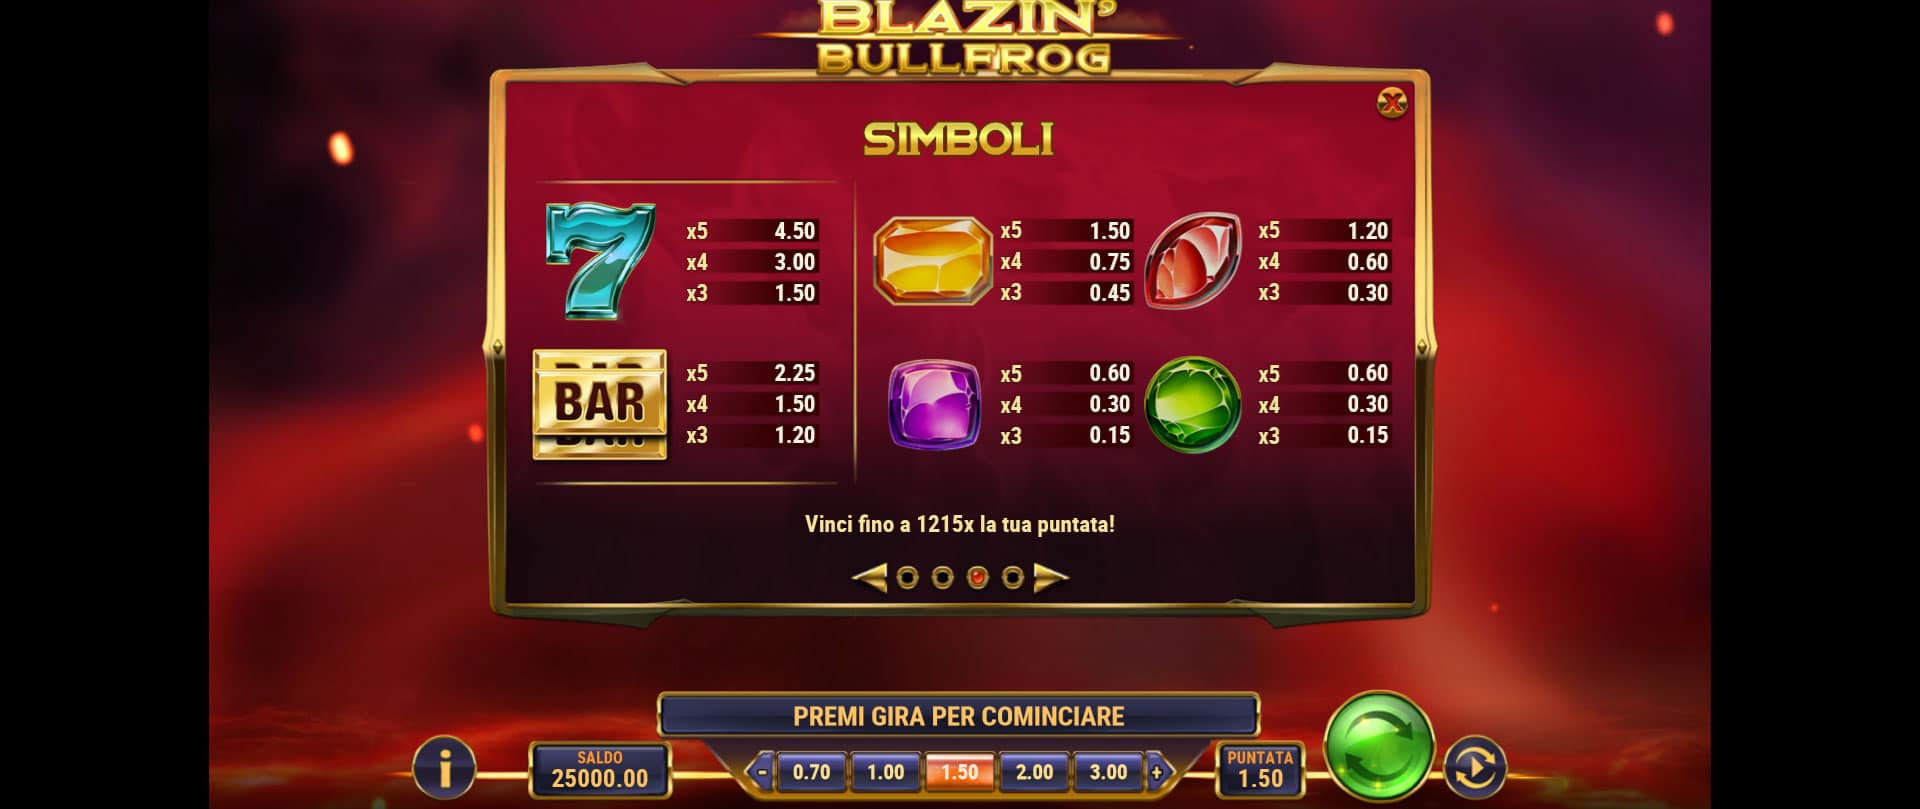 tabella dei simboli della slot machine blazin bullfrog